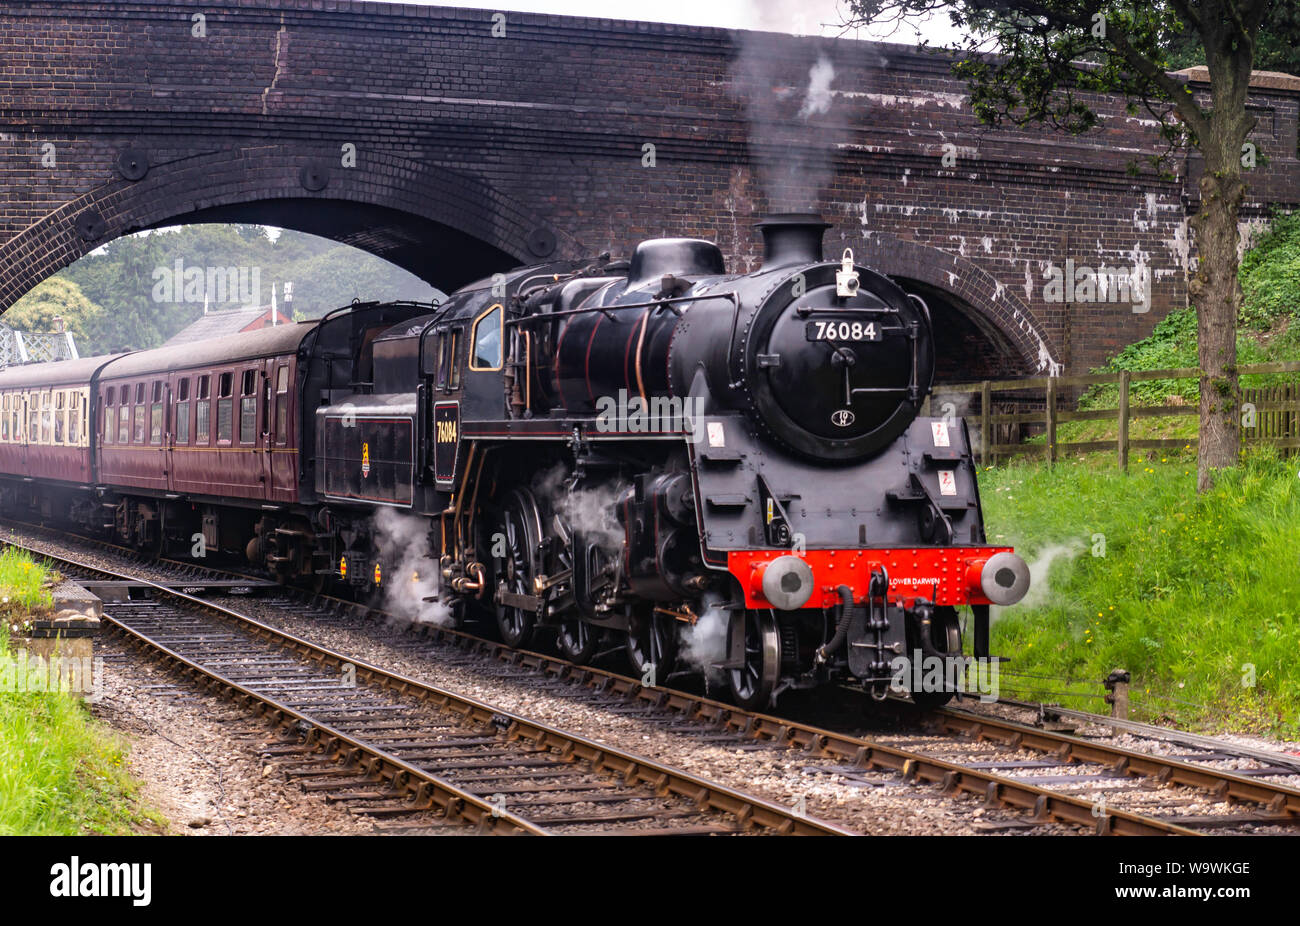 Aucune locomotive 76084 class 4MT, il roule sous le pont à Weybourne gare avec un râteau de calèches Banque D'Images